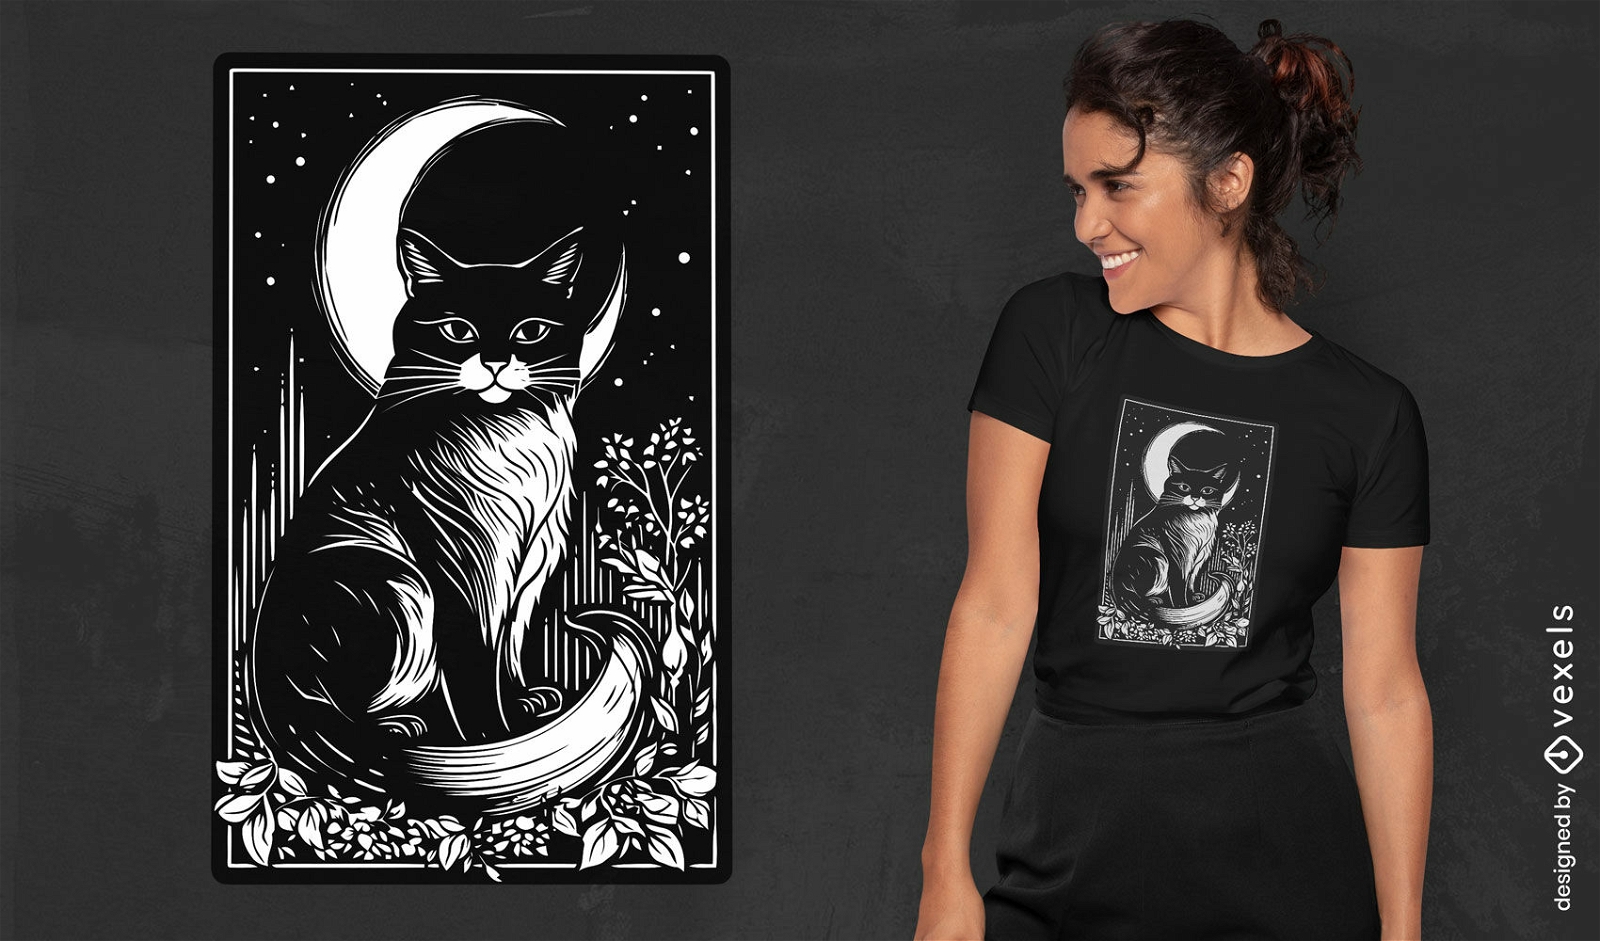 Dise?o de camiseta con tarjeta de gato y luna.